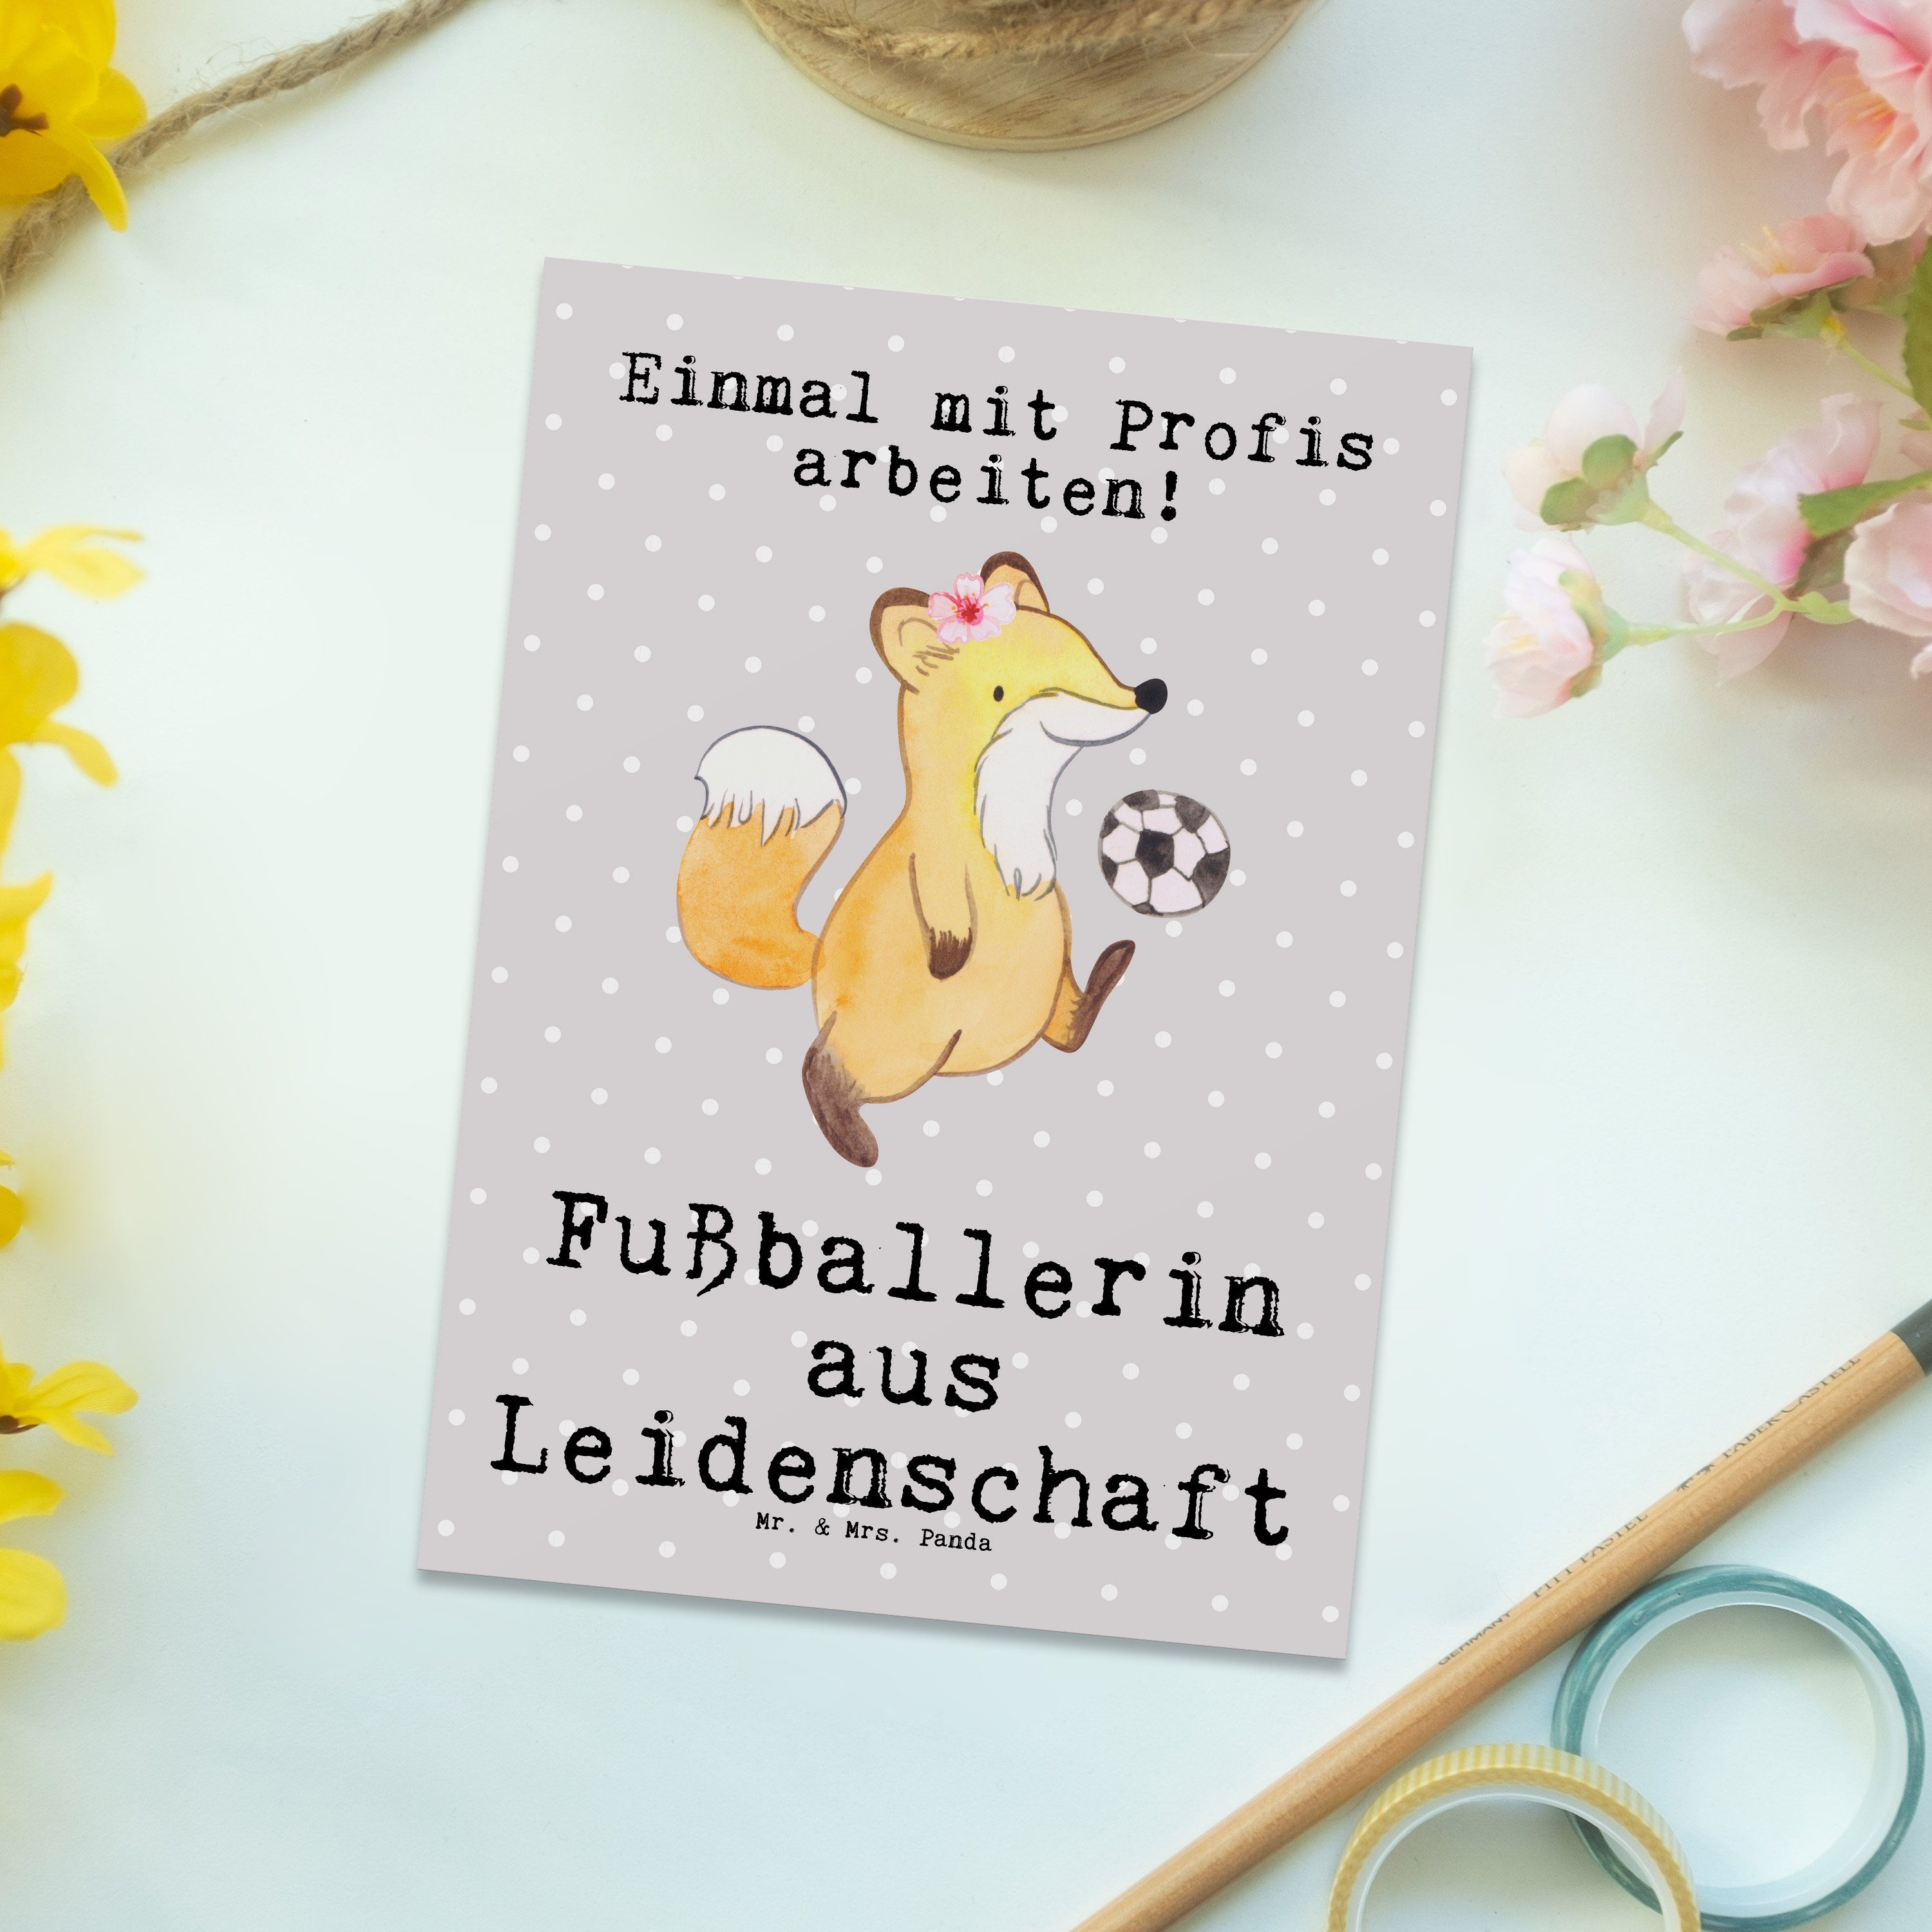 Mr. & Mrs. Panda Leidenschaft aus - Grußkarte, Ar Grau Pastell Geschenk, - Fußballerin Postkarte